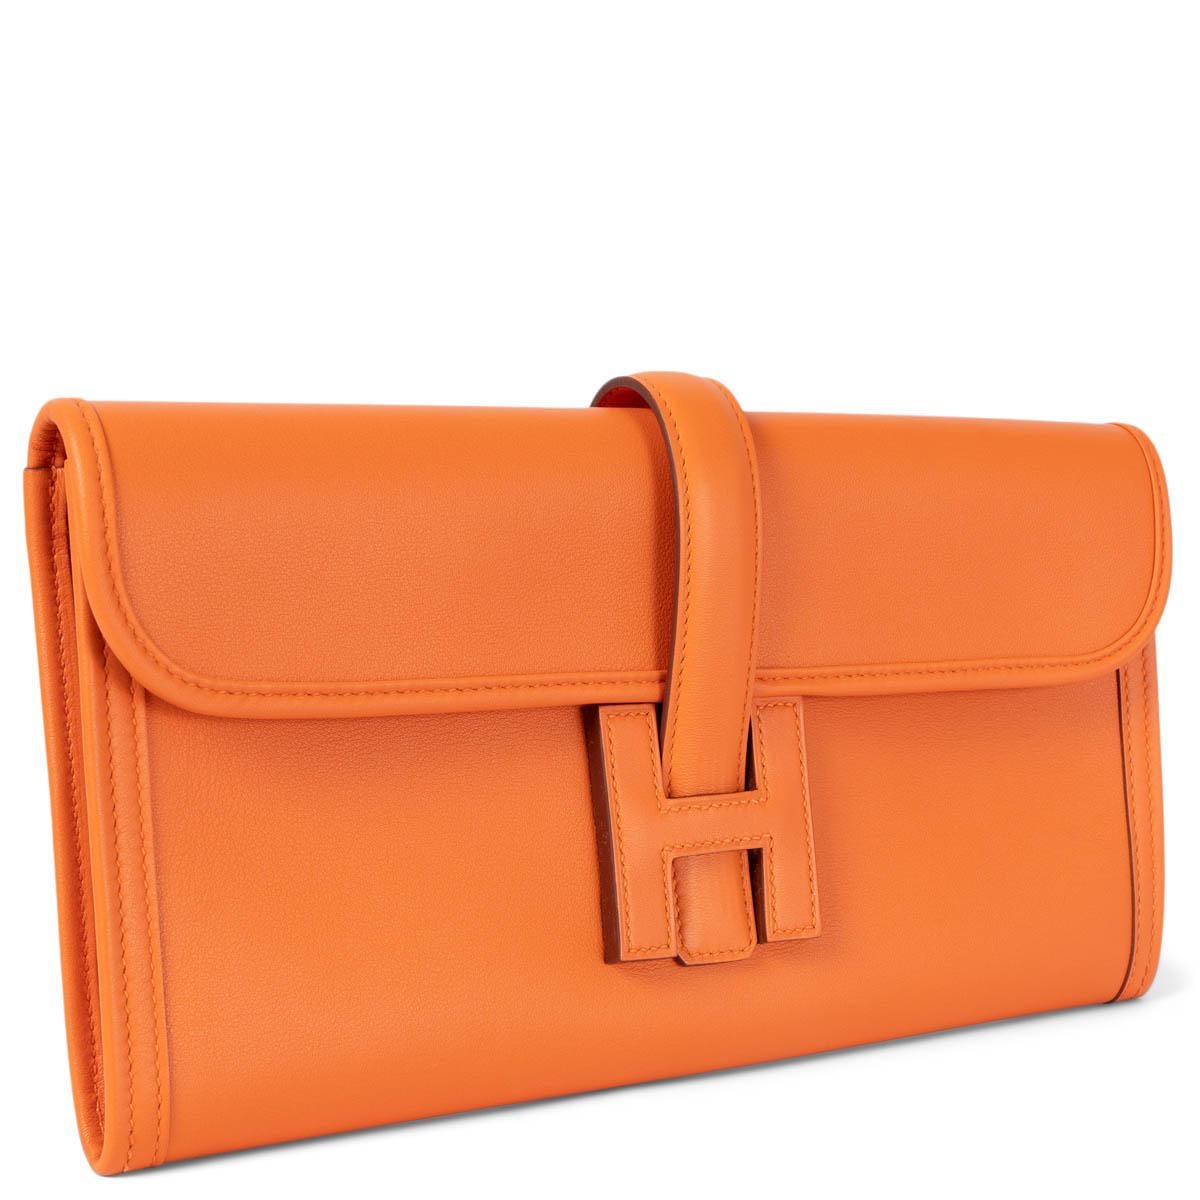 100% authentische Hermès Jige Elan 29 Clutch aus orangefarbenem Veau Swift Leder. Mit einem Überschlag mit Riemen, der sich unter einem ledernen Hermès 